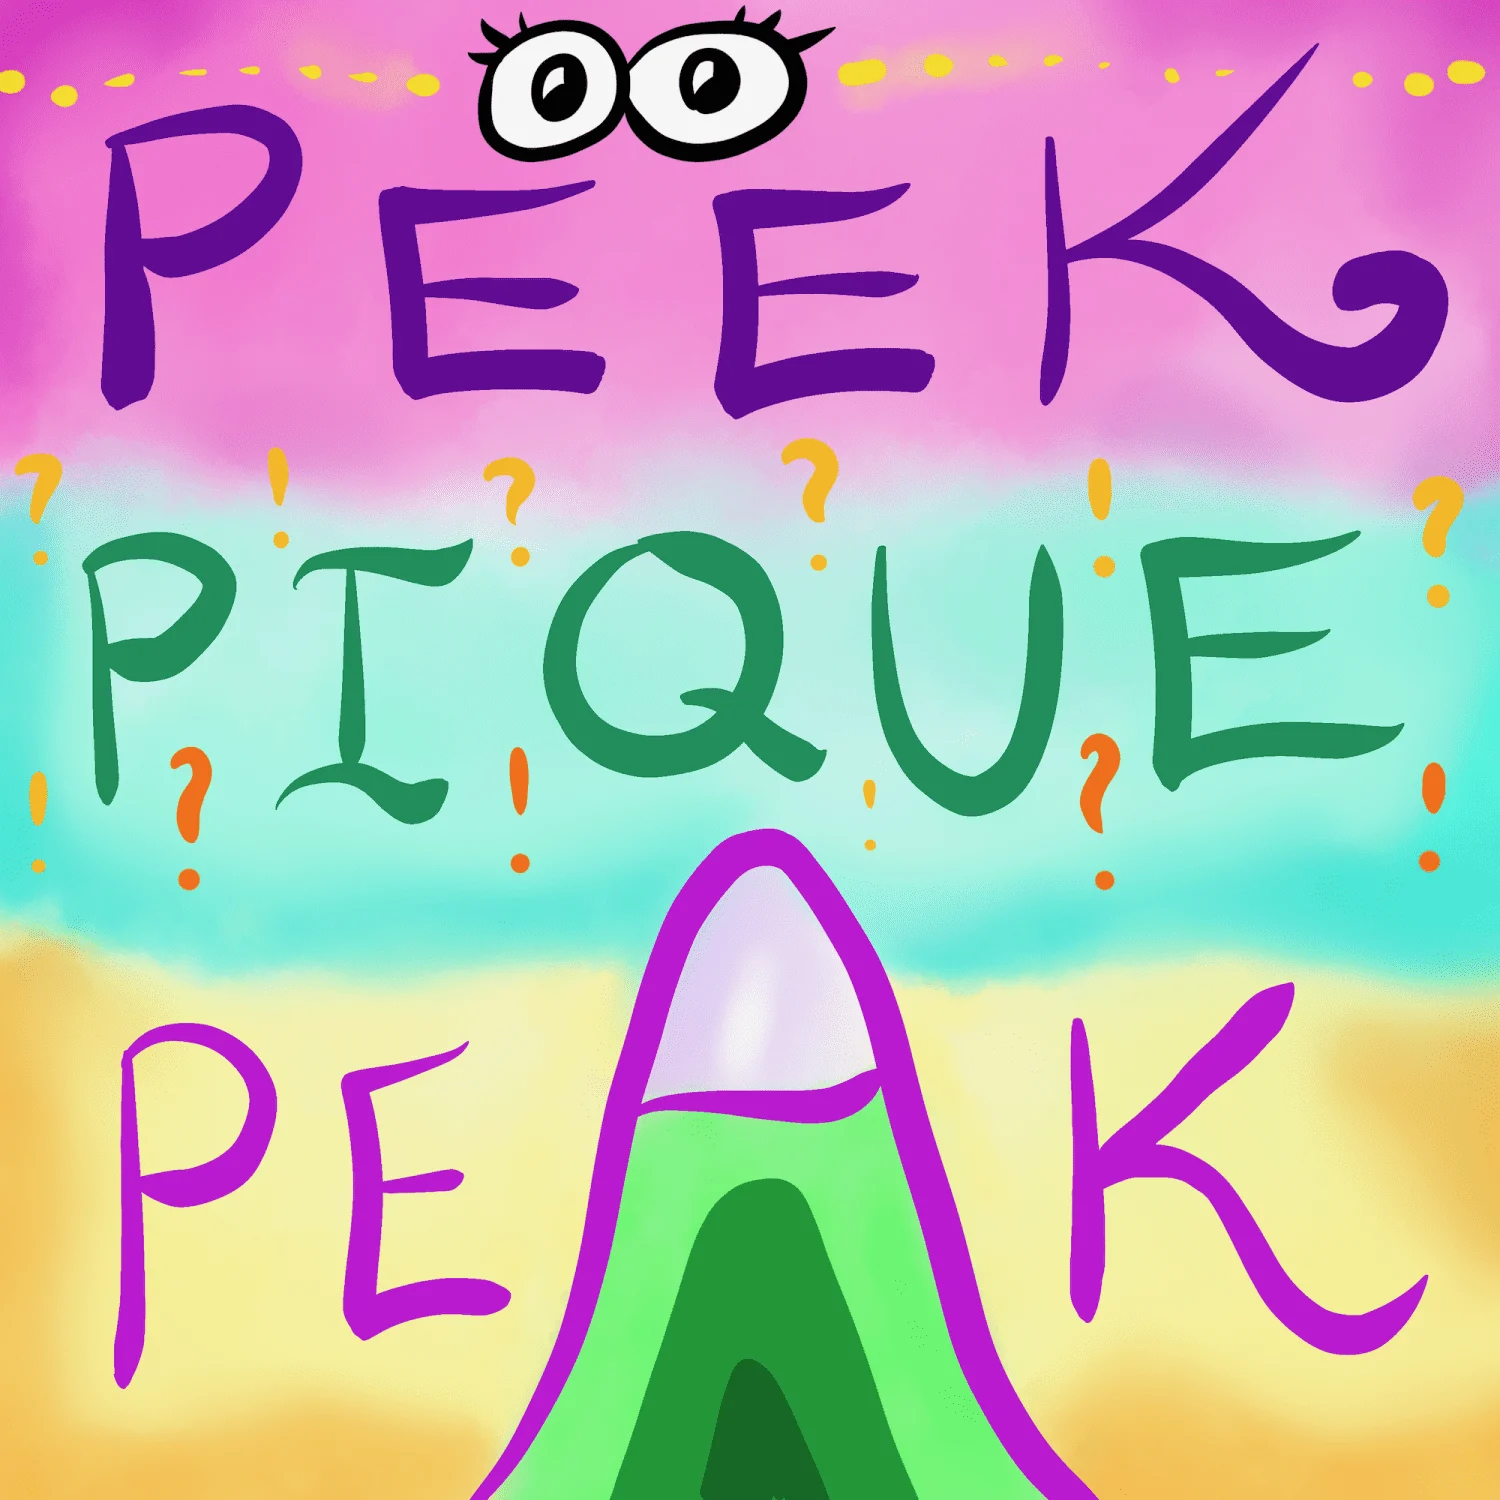 Peek vs. Peak or Pique